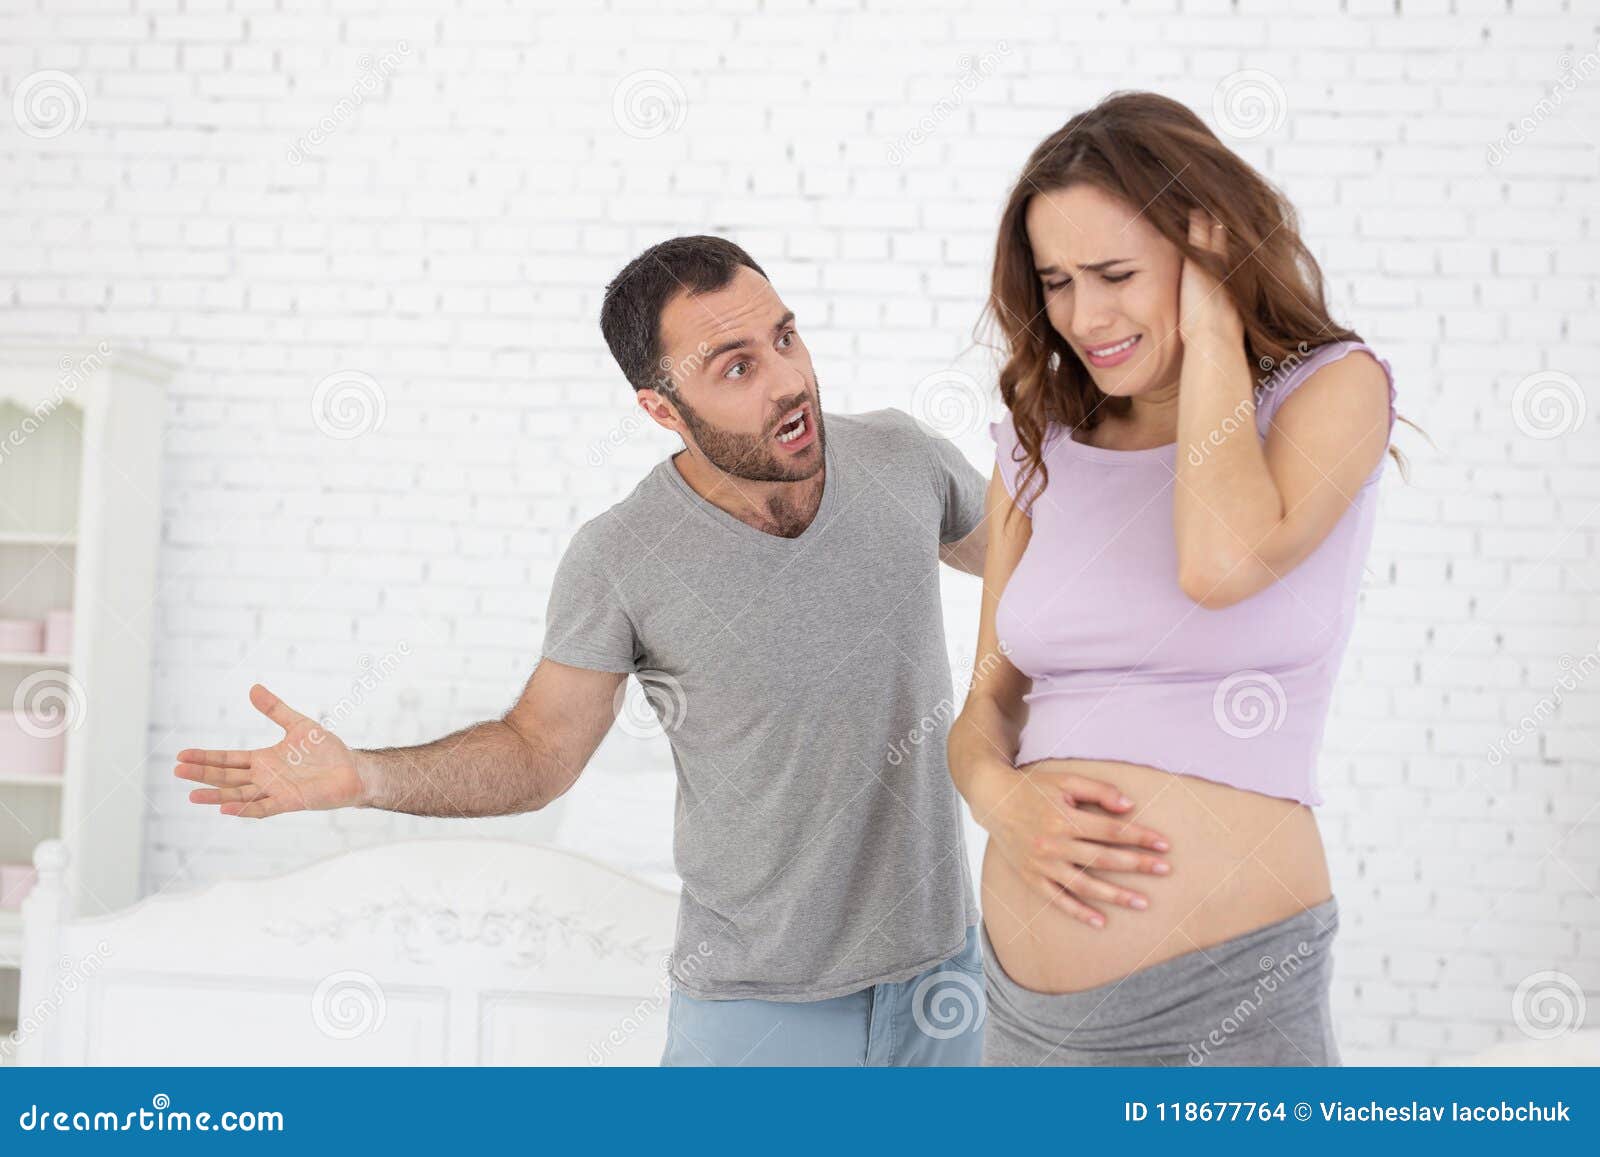 Изменяла мужу и забеременела. Кричит на беременную.